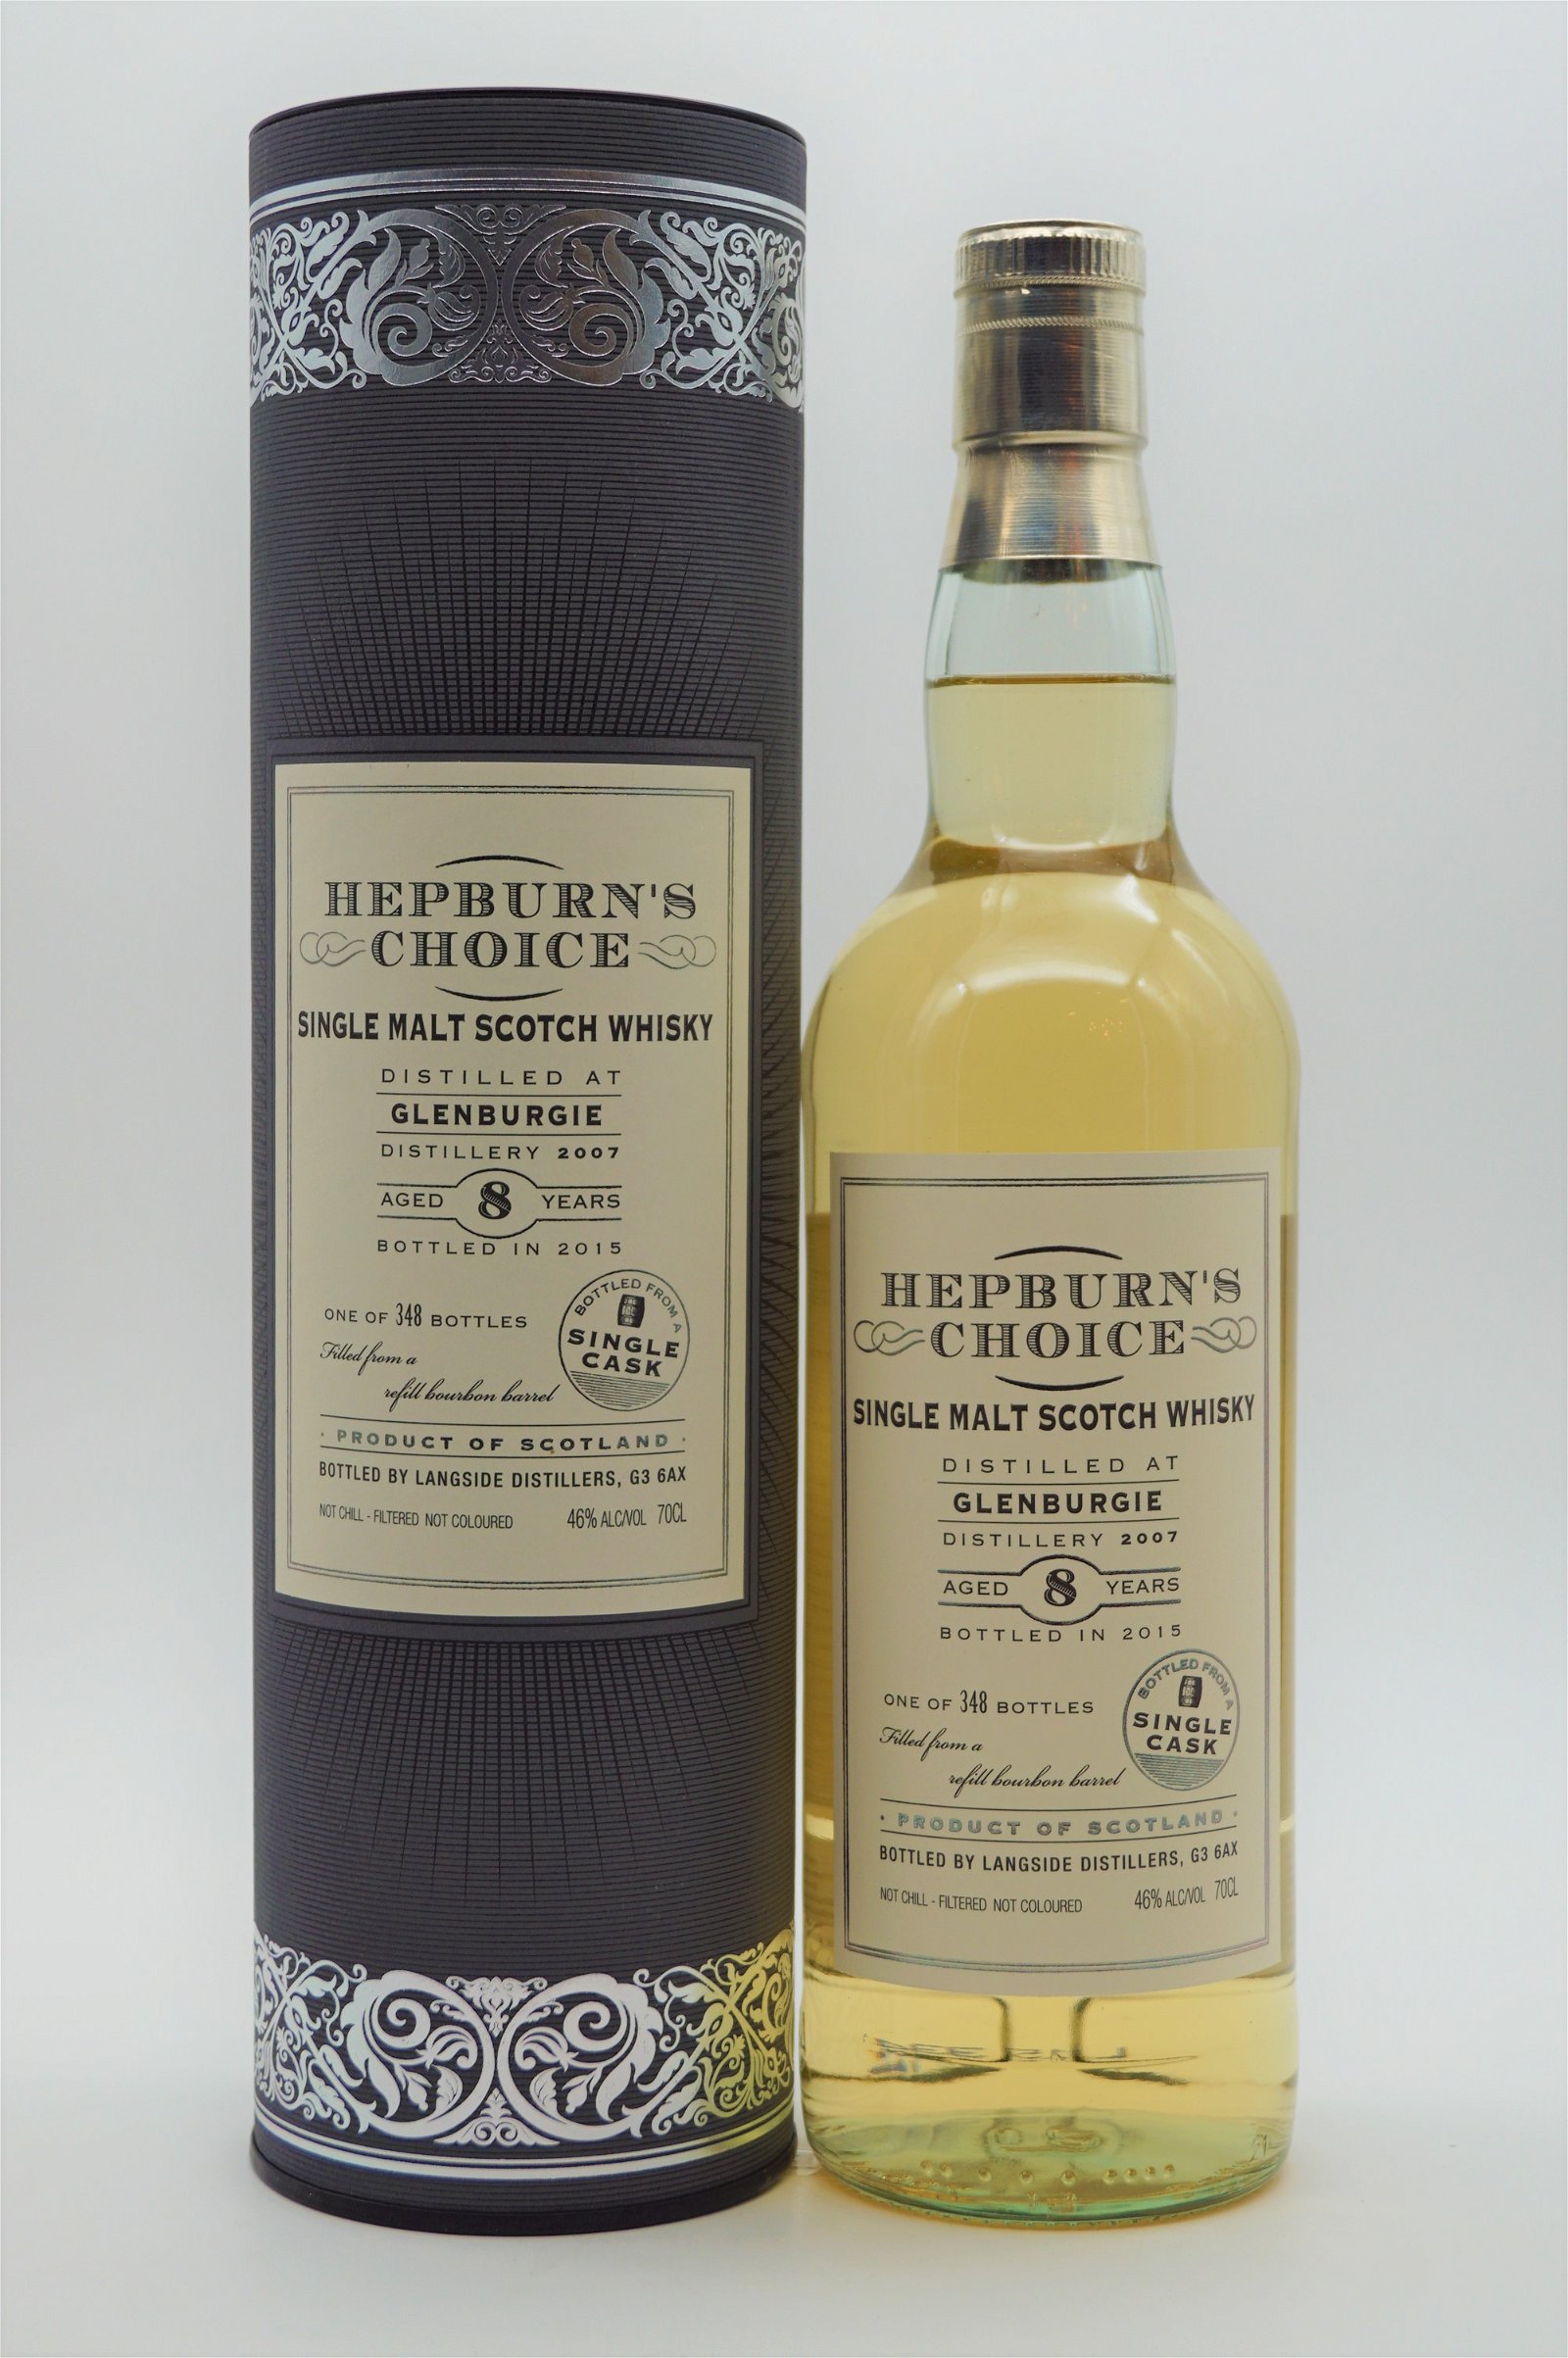 Hepburns Choice Glenburgie 8 jahre 2007/2015 - 348 Fl. Single Malt Scotch